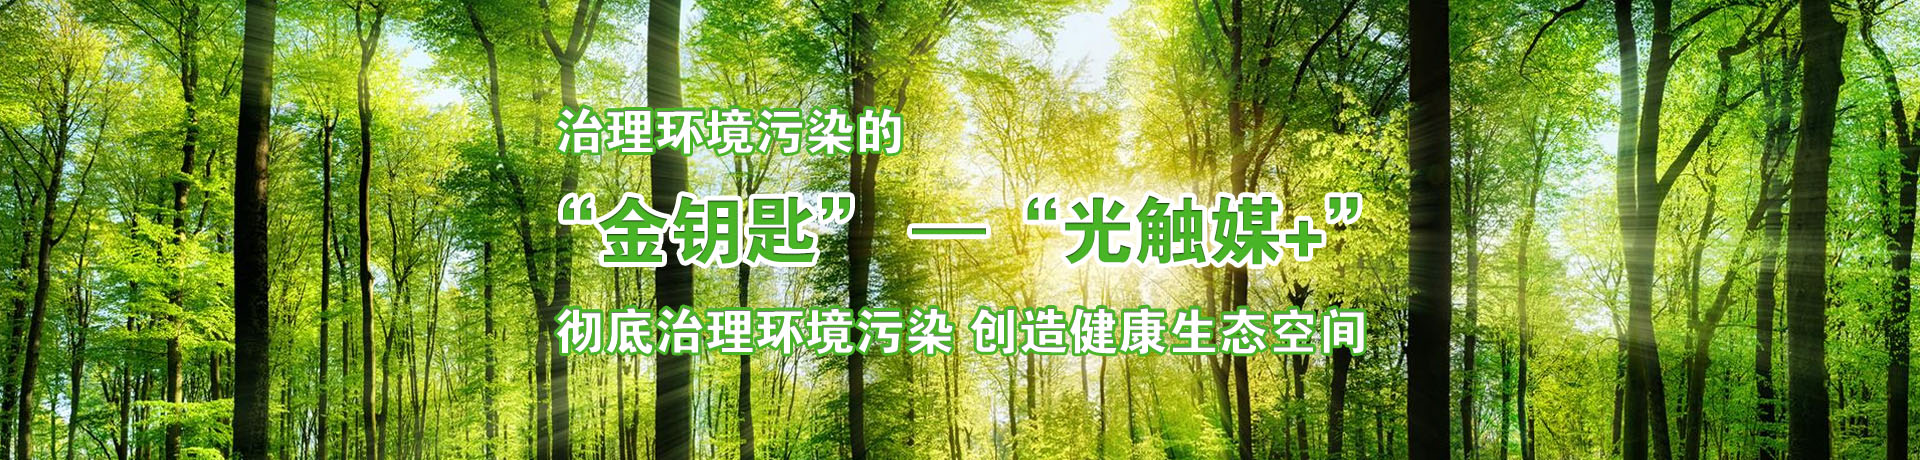 “光觸媒”革命性創新環保產物—鞍山市奇典公司--中國消費新聞網